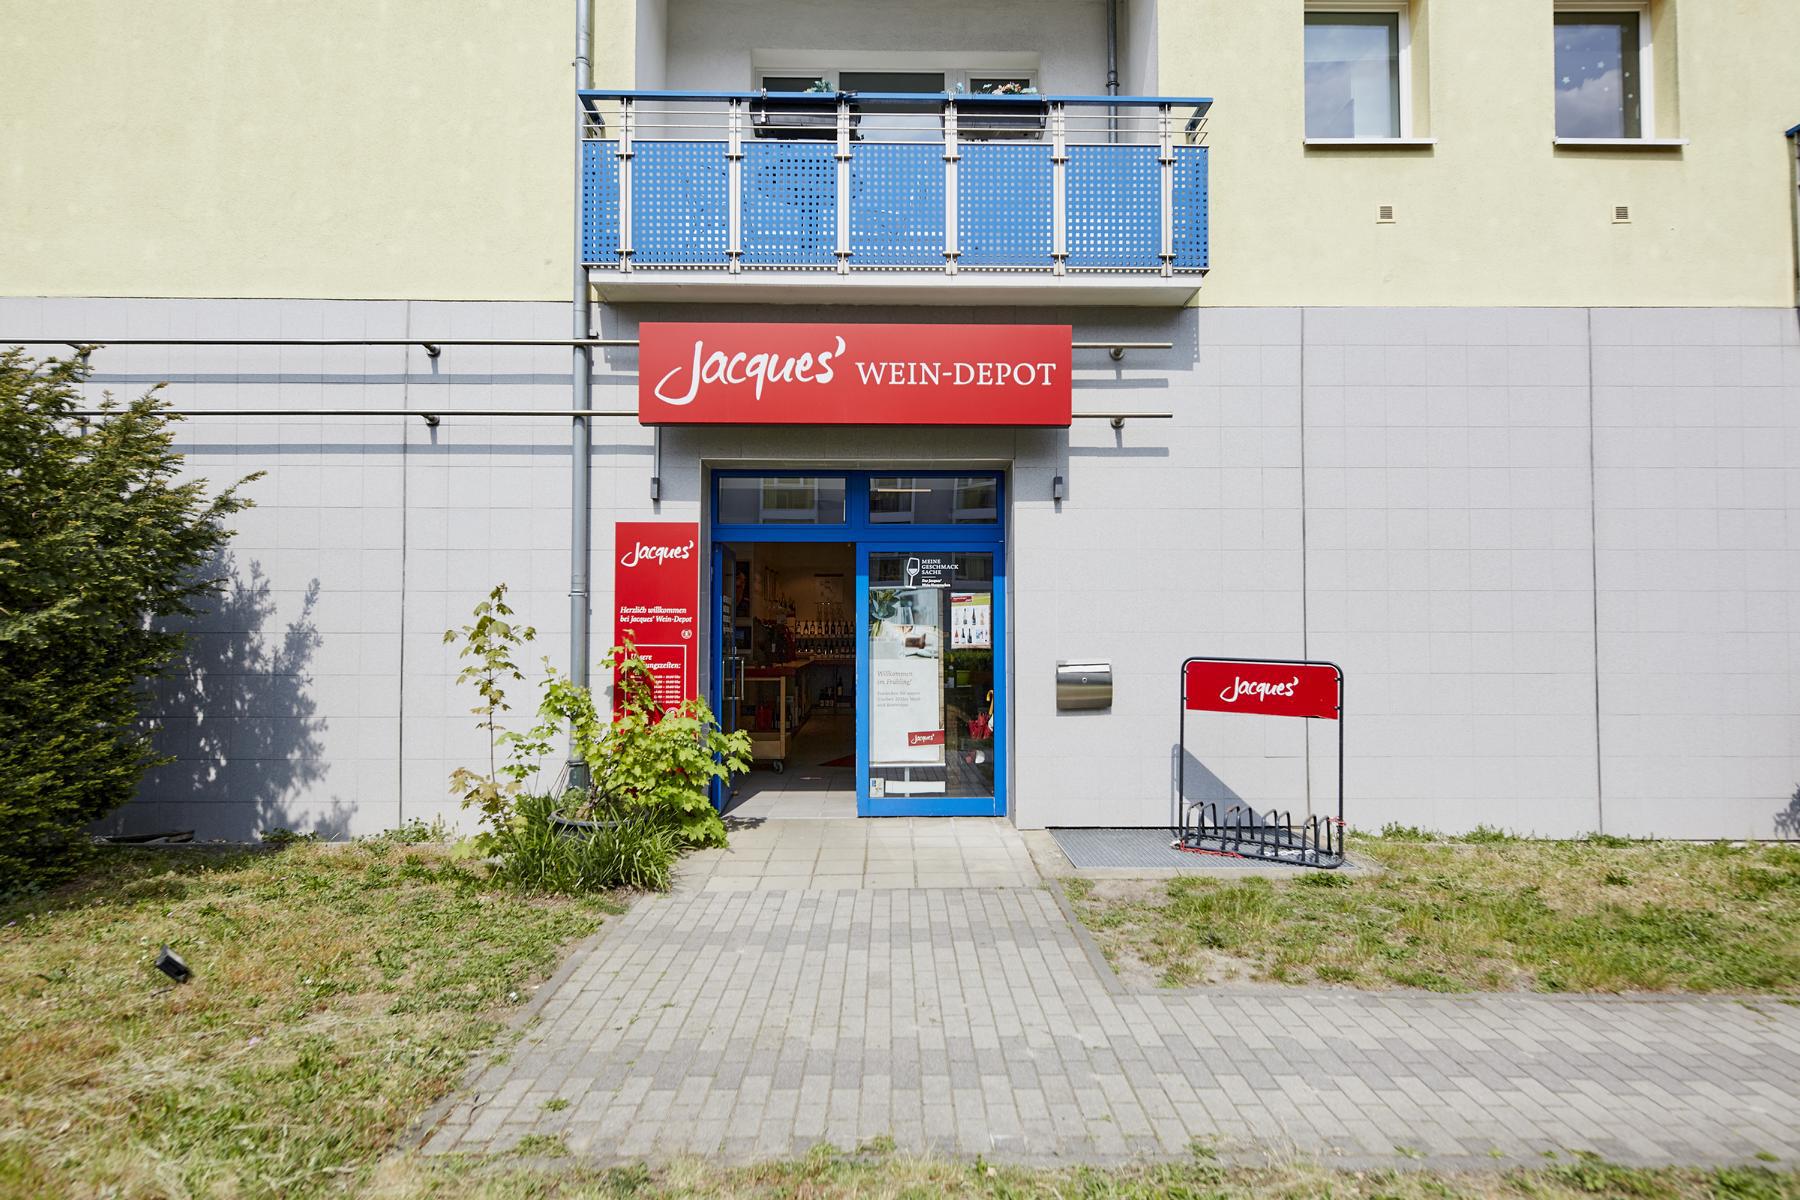 Bild 5 Jacques’ Wein-Depot Berlin-Lichterfelde in Berlin